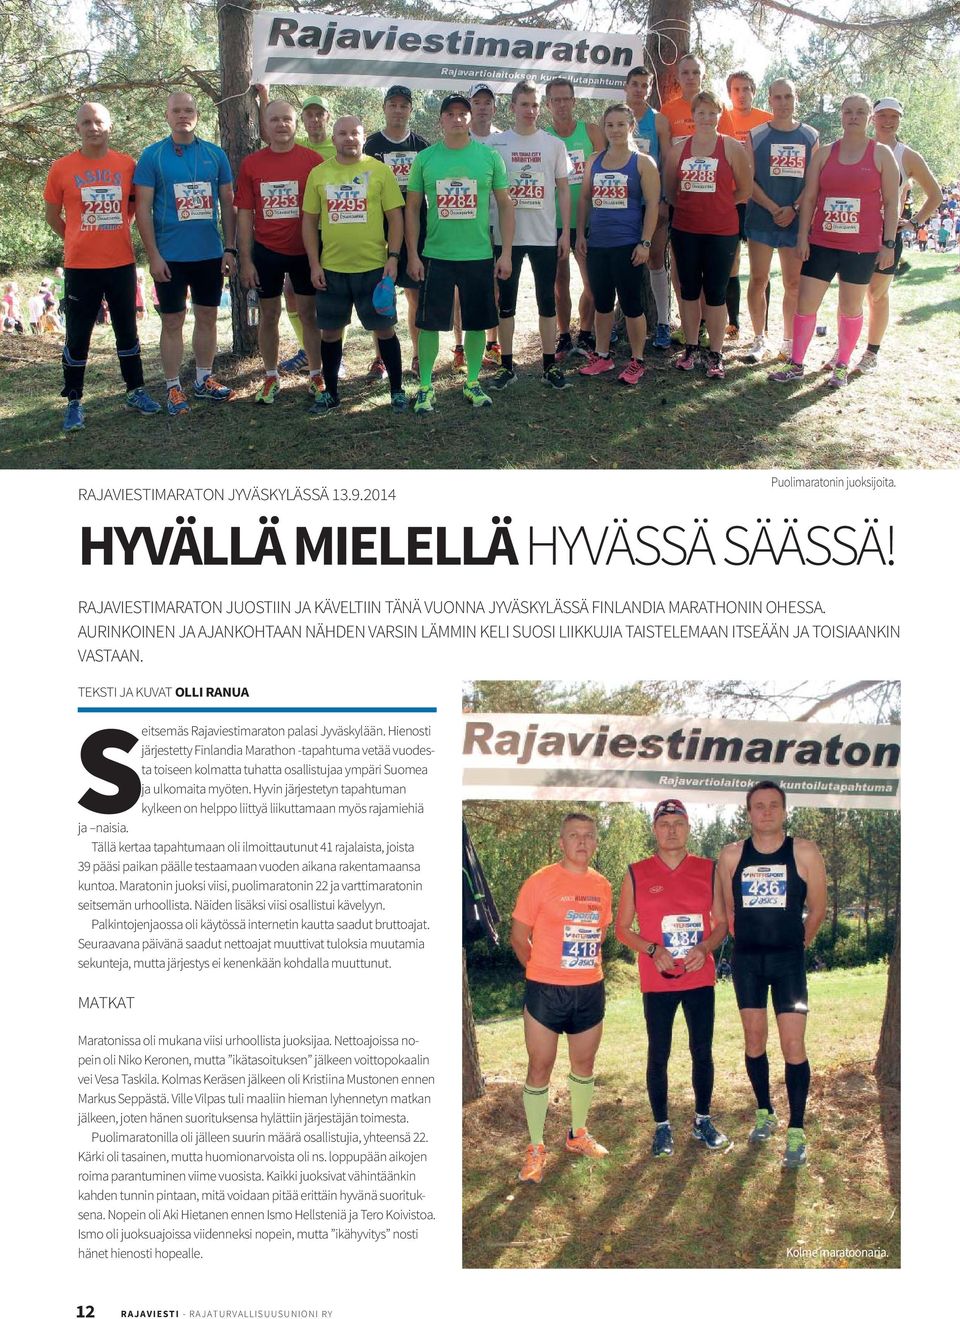 Hienosti järjestetty Finlandia Marathon -tapahtuma vetää vuodesta toiseen kolmatta tuhatta osallistujaa ympäri Suomea ja ulkomaita myöten.